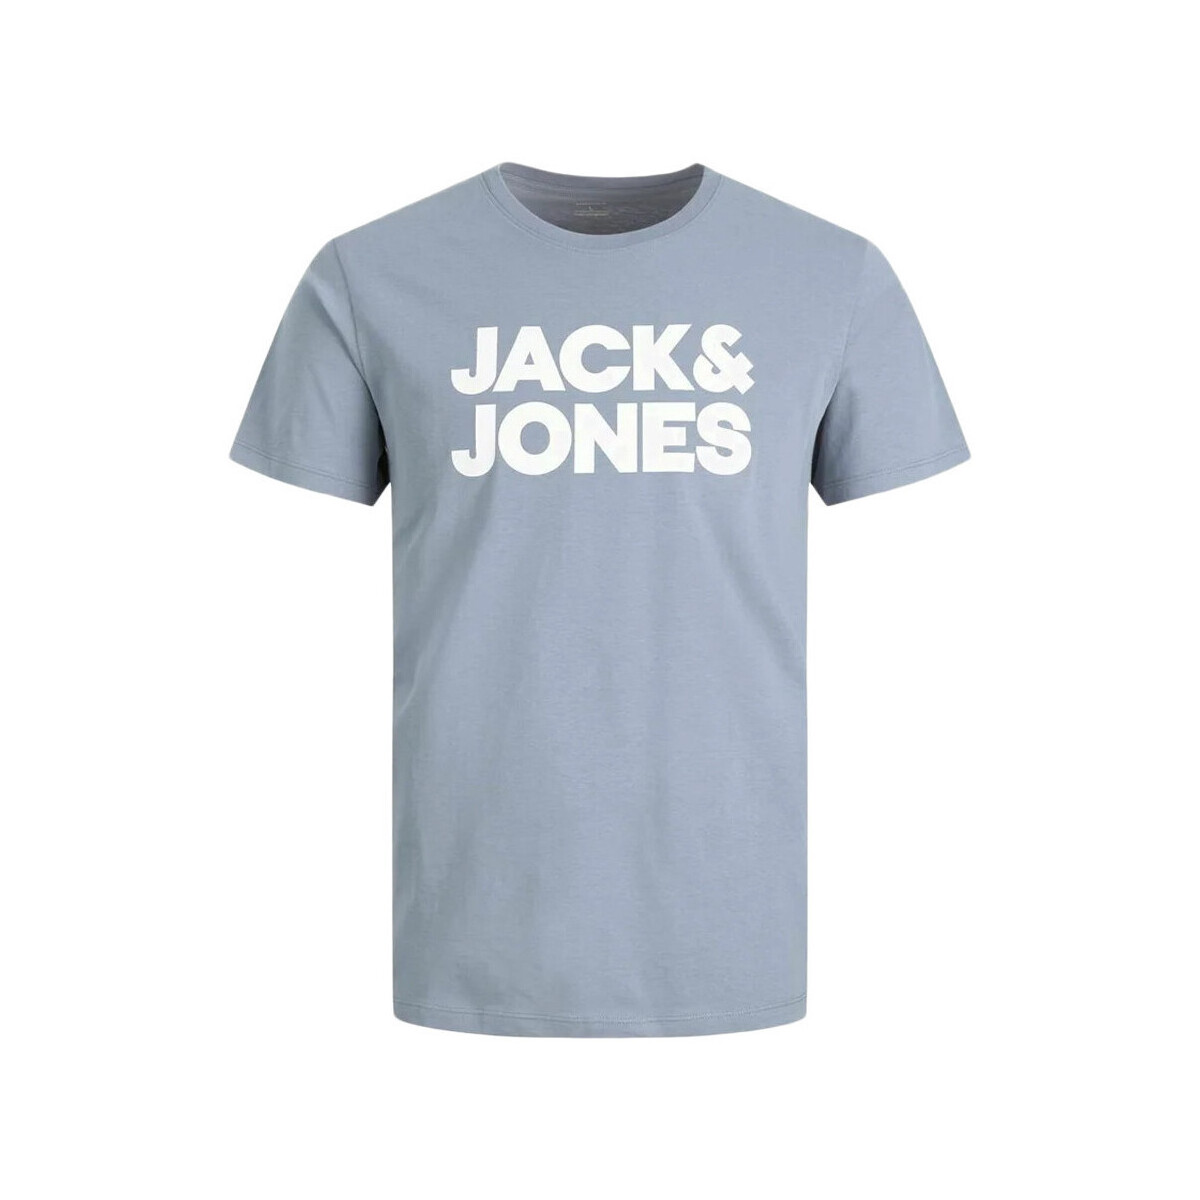 Abbigliamento Bambino T-shirt & Polo Jack & Jones 12255501 Blu